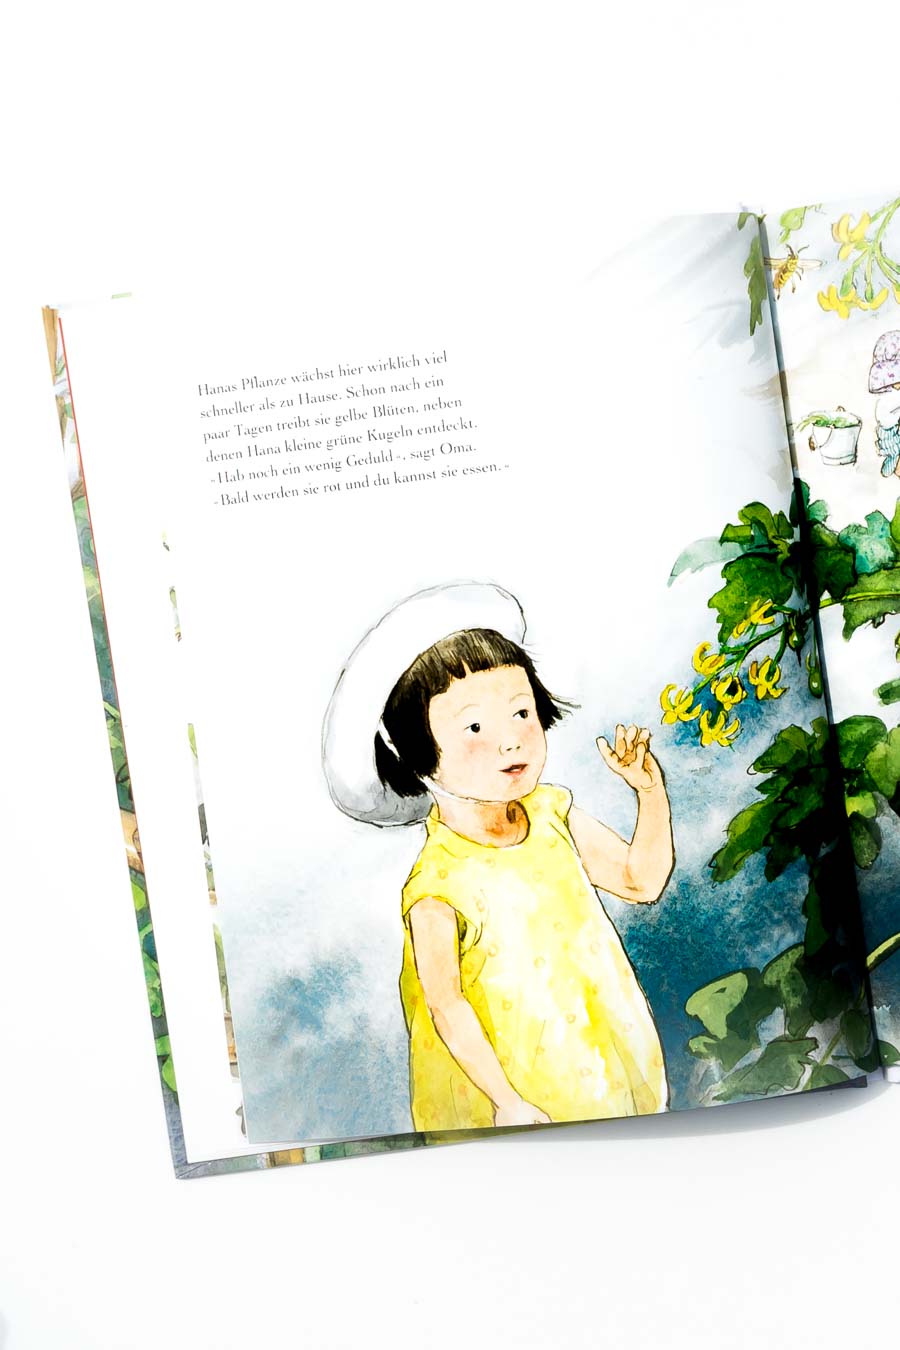 Das Tomatenfest von Satomi Ichikawa. Ein Blick ins Buch sowie eine Buchrezension auf dem Blog "Chez Mama Poule". Sommerbücher, Bilderbücher für Kinder, Bücher für Kita oder Kindergarten. Realistische Bilderbücher.